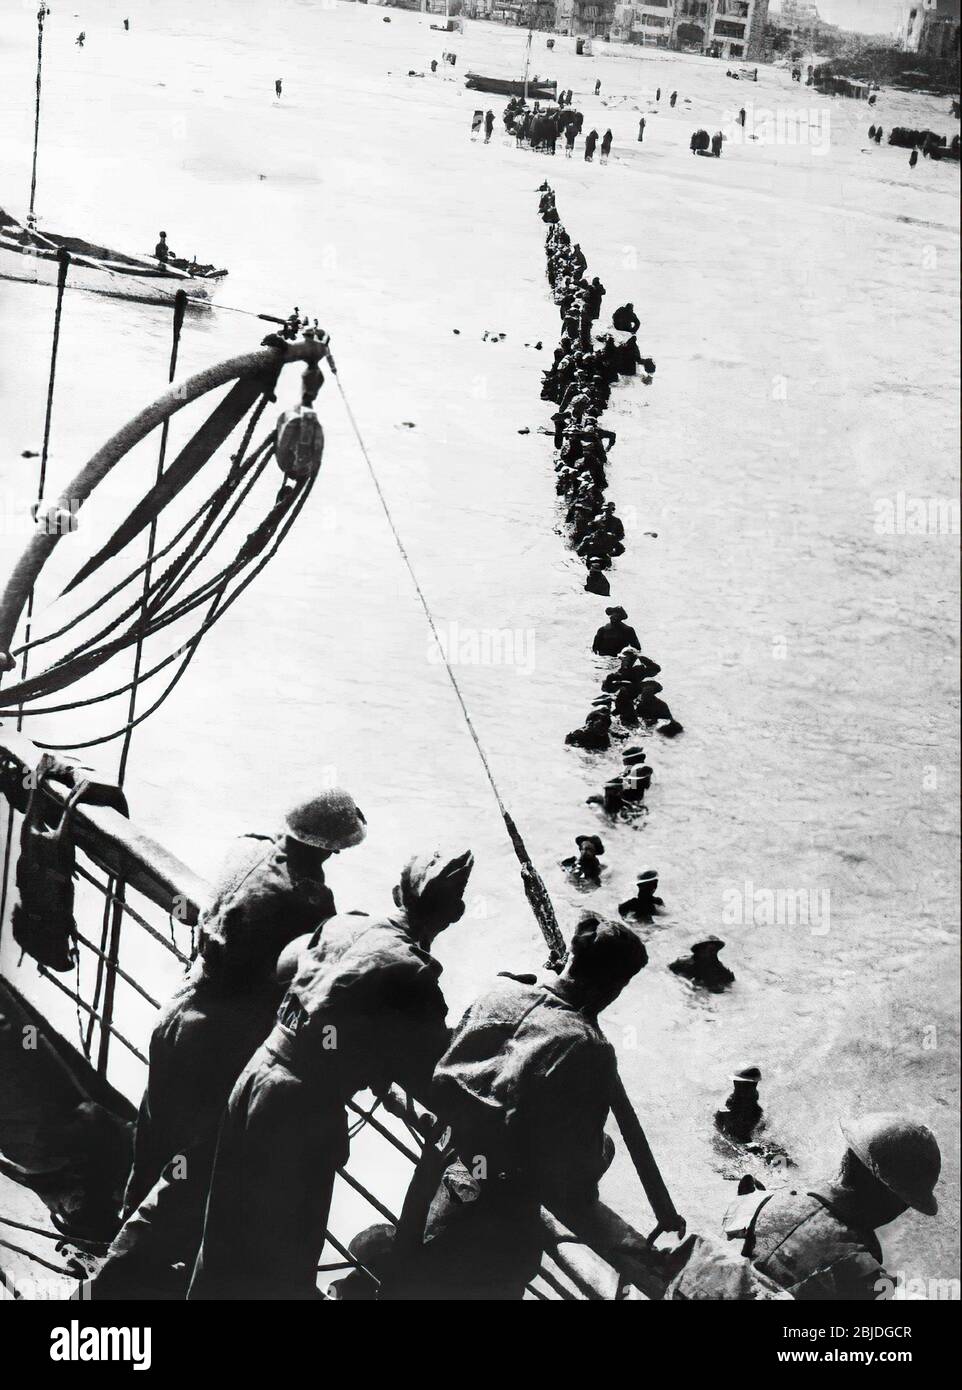 Die Evakuierung von Dünkirchen, die unter dem Codenamen Operation Dynamo und auch als das Wunder von Dünkirchen bekannt ist, war die Evakuierung alliierter Soldaten während des Zweiten Weltkriegs von den Stränden und dem Hafen von Dünkirchen im Norden Frankreichs zwischen dem 26. Mai und dem 4. Juni 1940.URHEBER: gd-jpeg v1.0 (mit IJG JPEG v62), Qualität = 90 Stockfoto